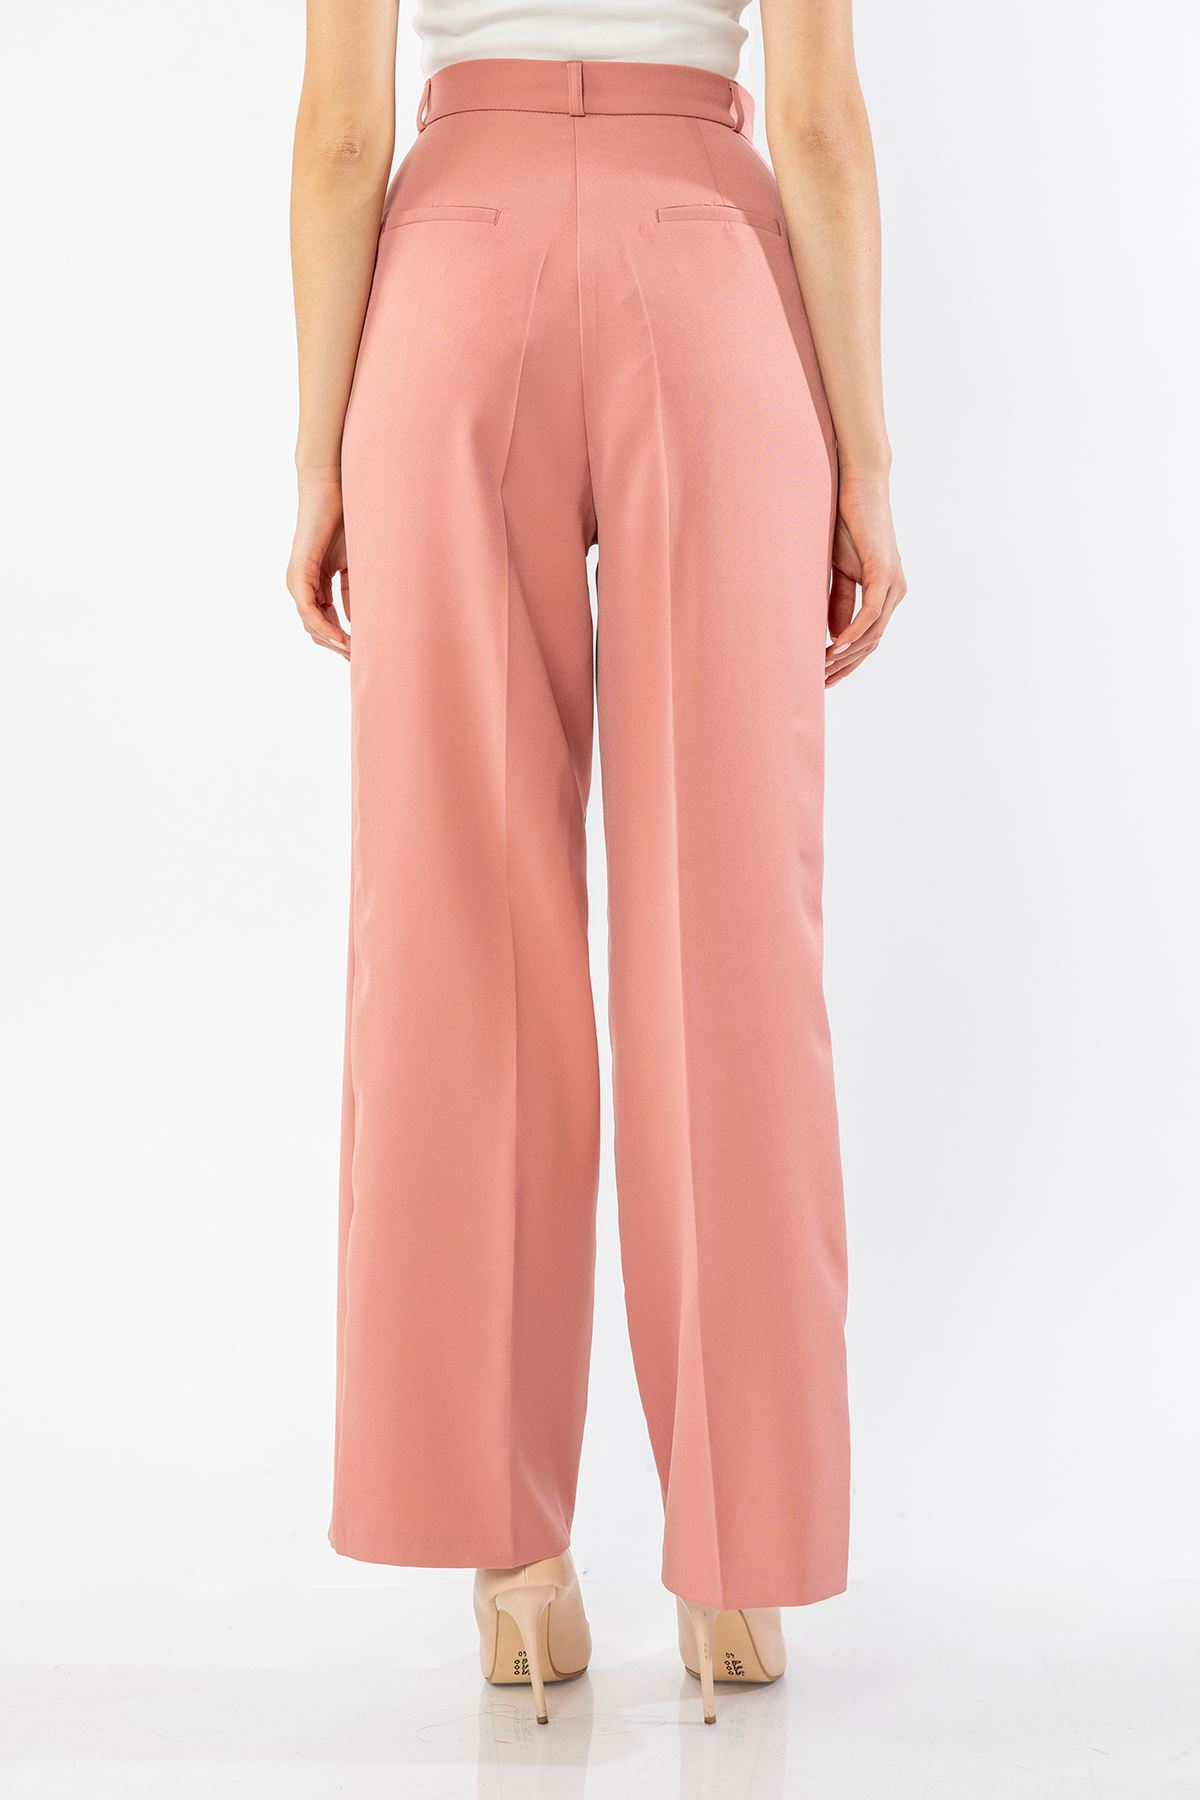 атласный ткань палаццо женские брюки - Светло розовый